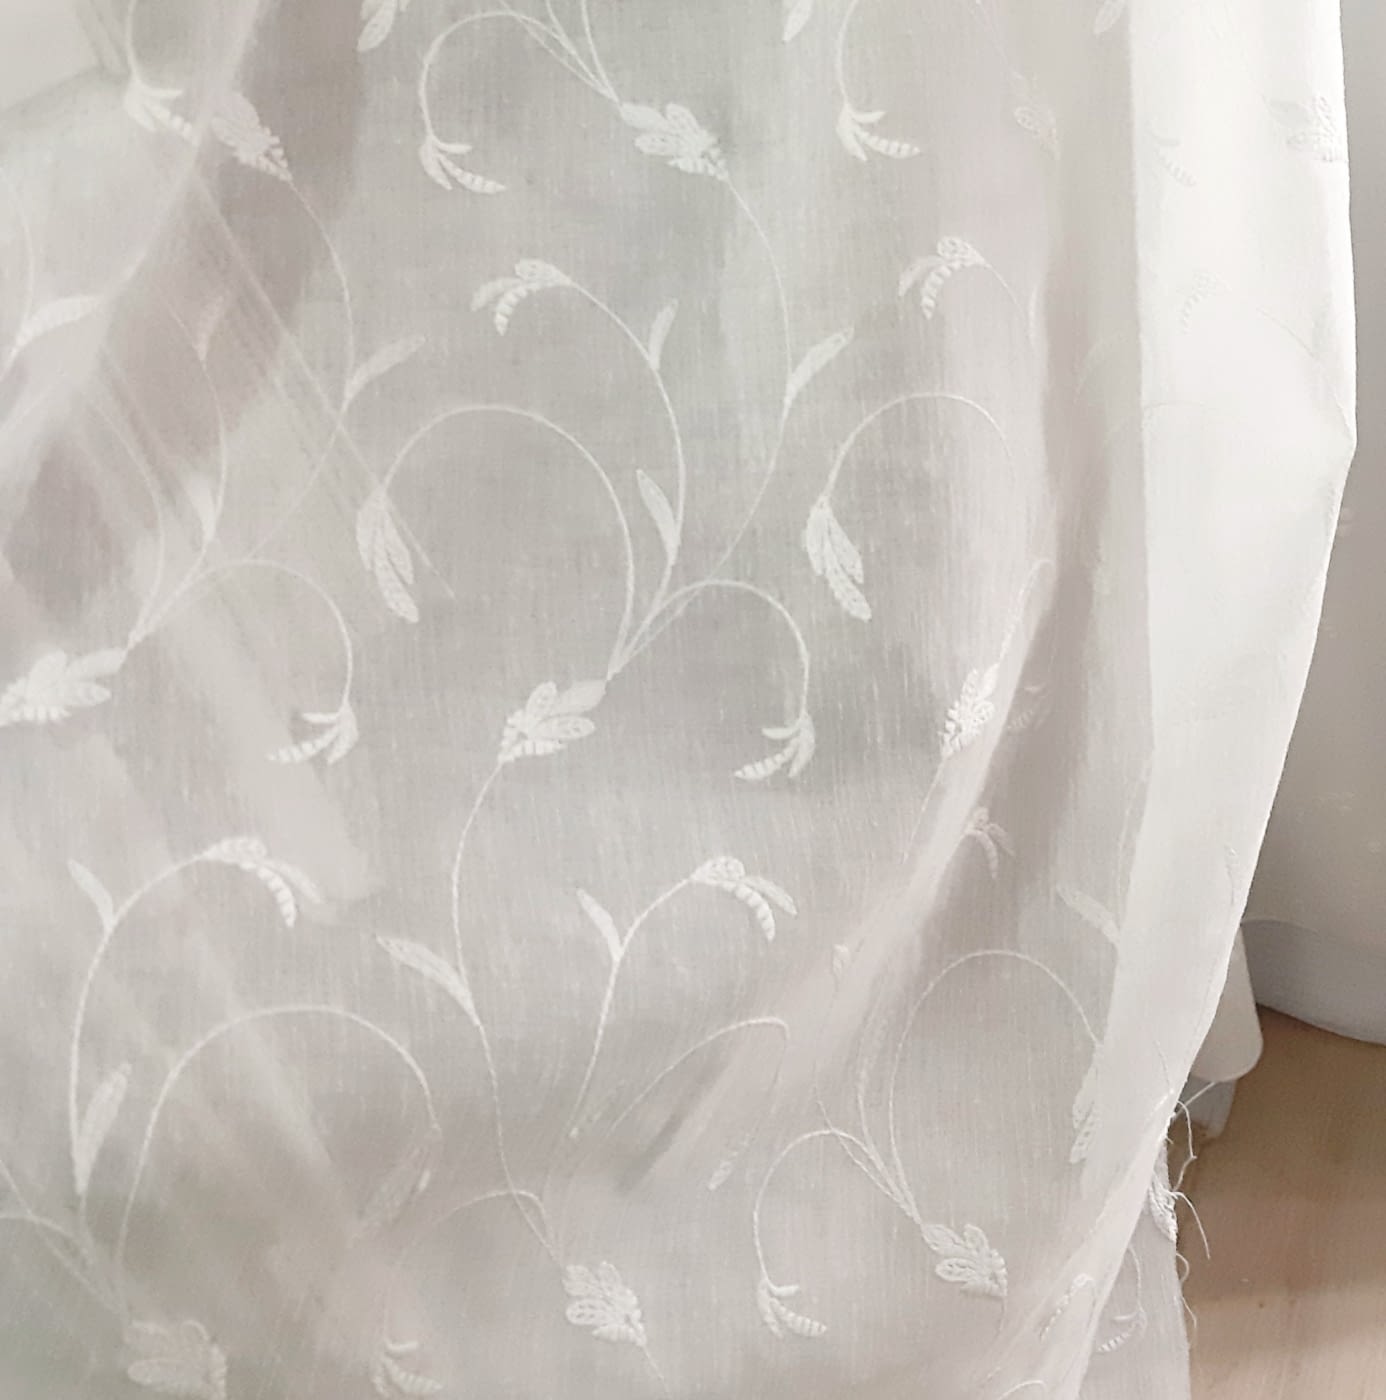 GENERICO Visillos blancos con diseño bordado Hojas Grises 230x140cm